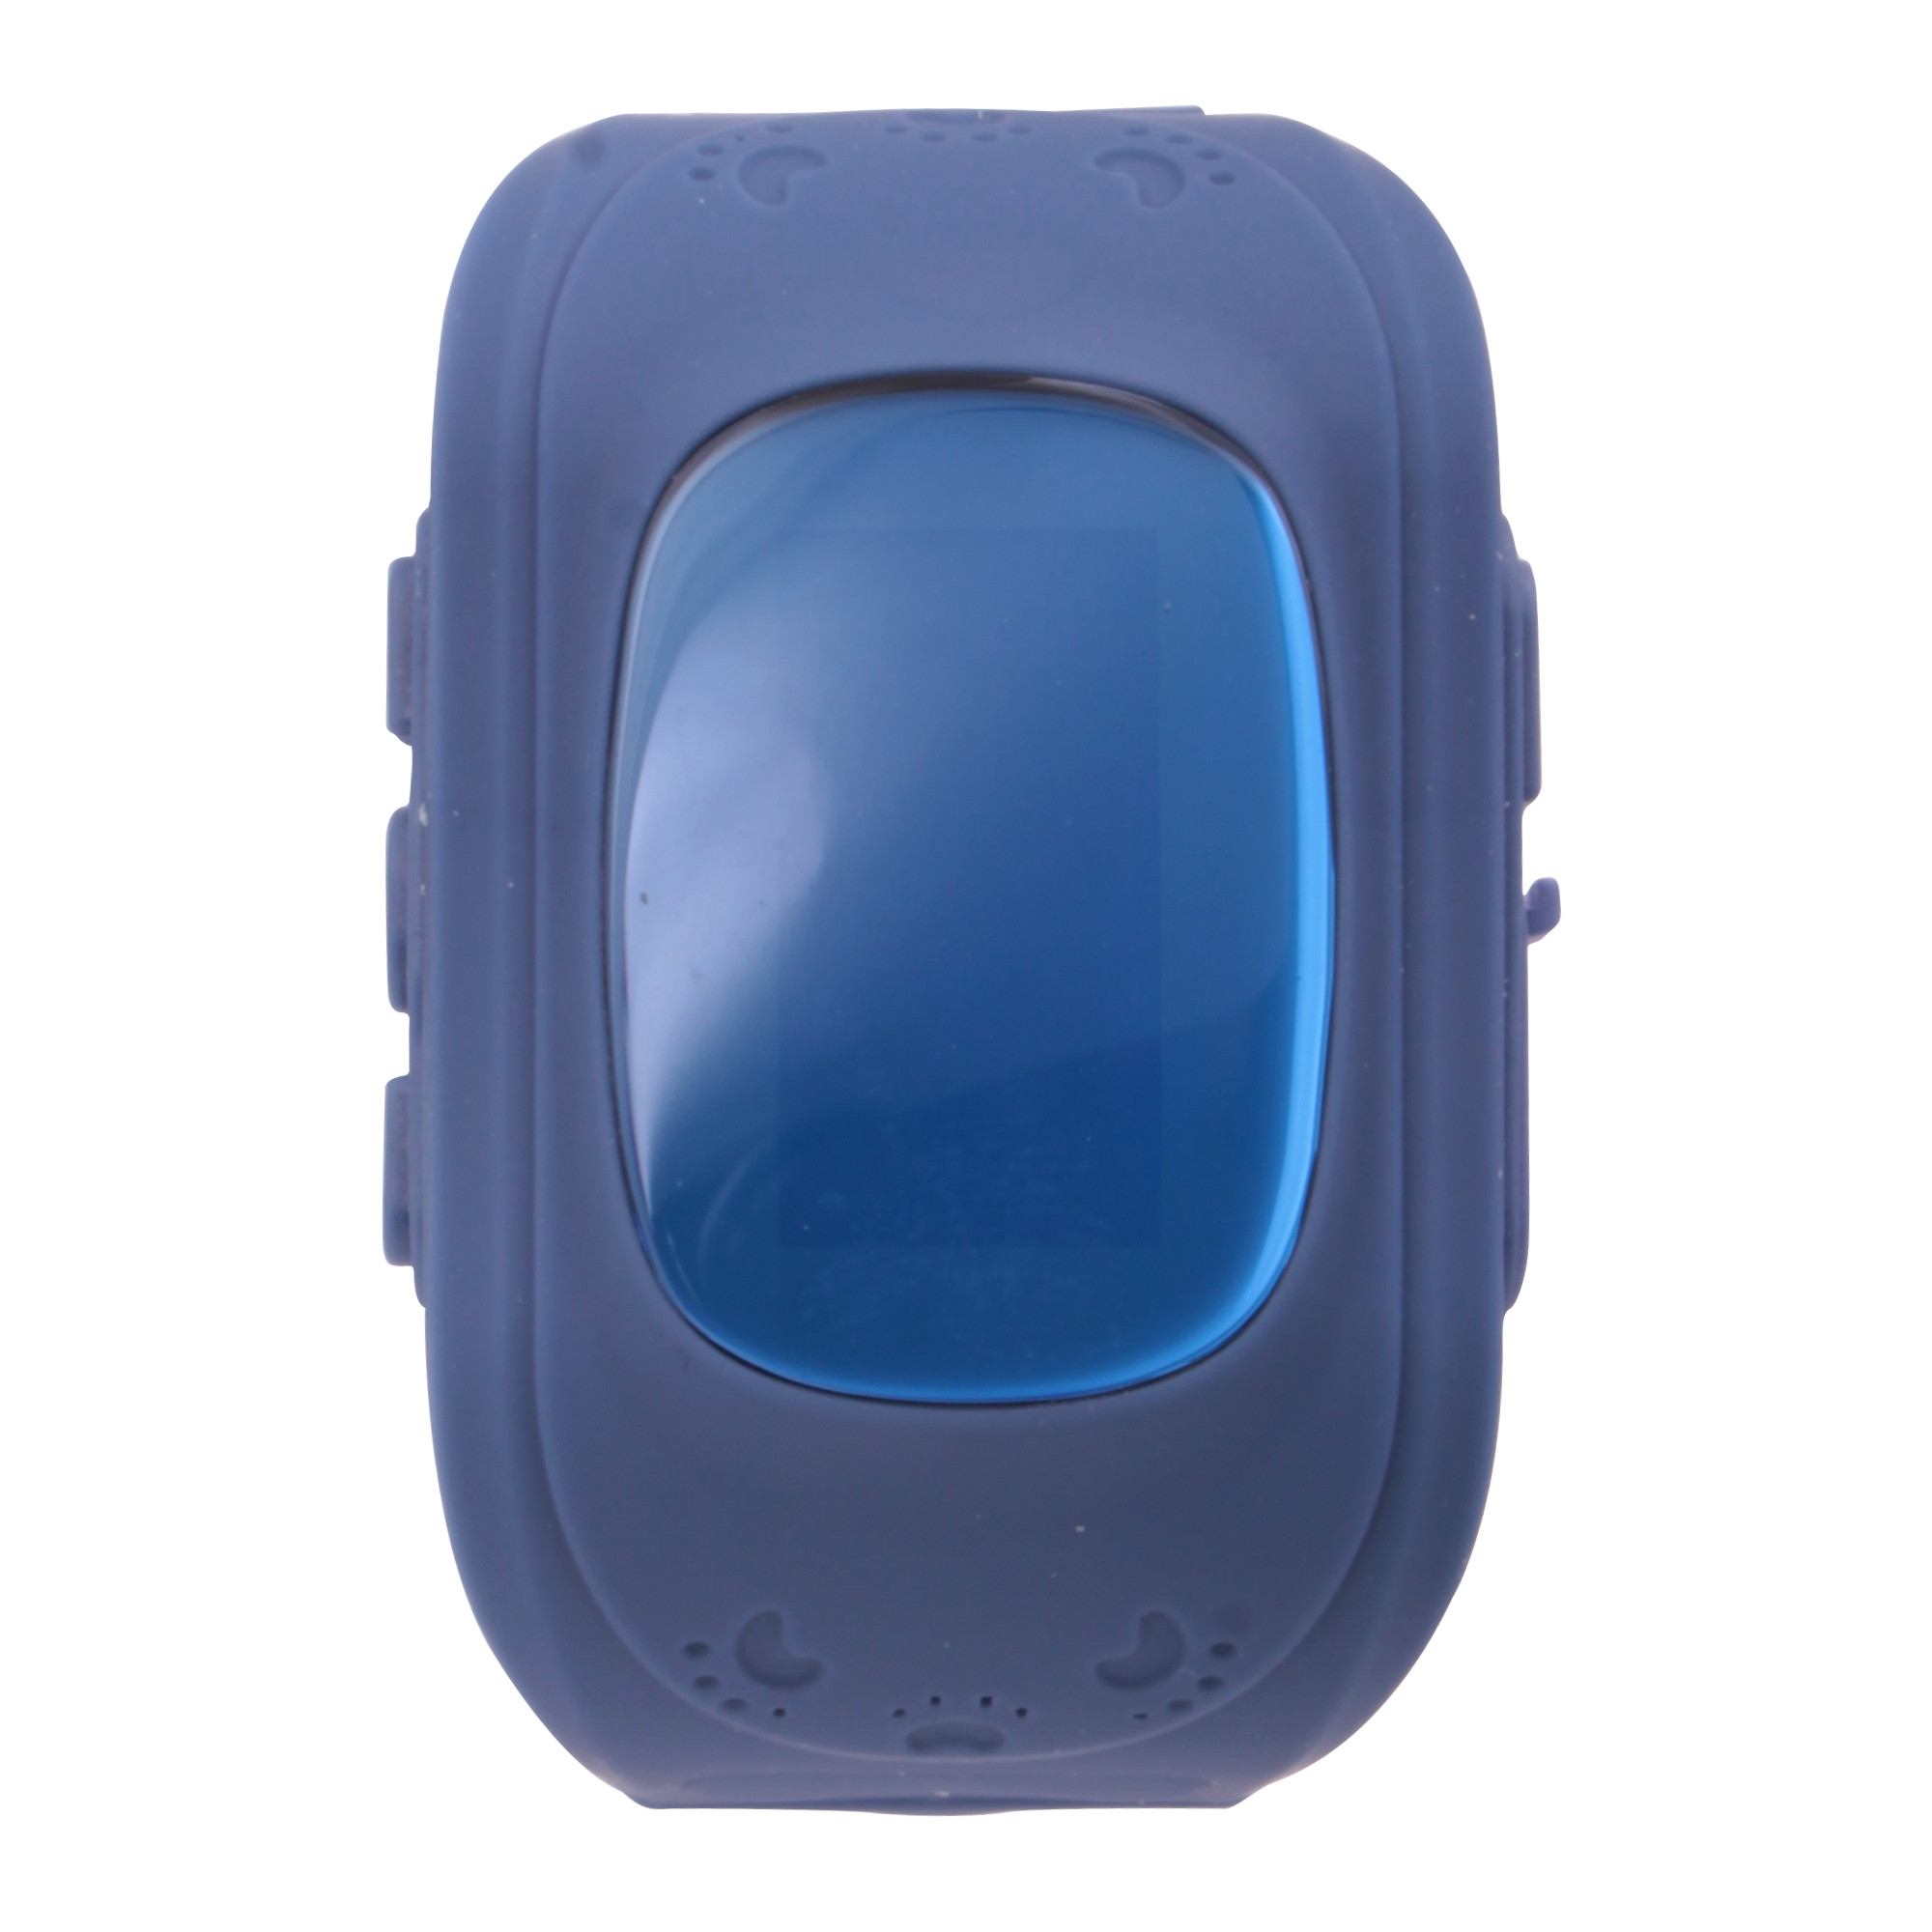 Часы-GPS Smart Watch Q50 резиновые с полным экраном синие